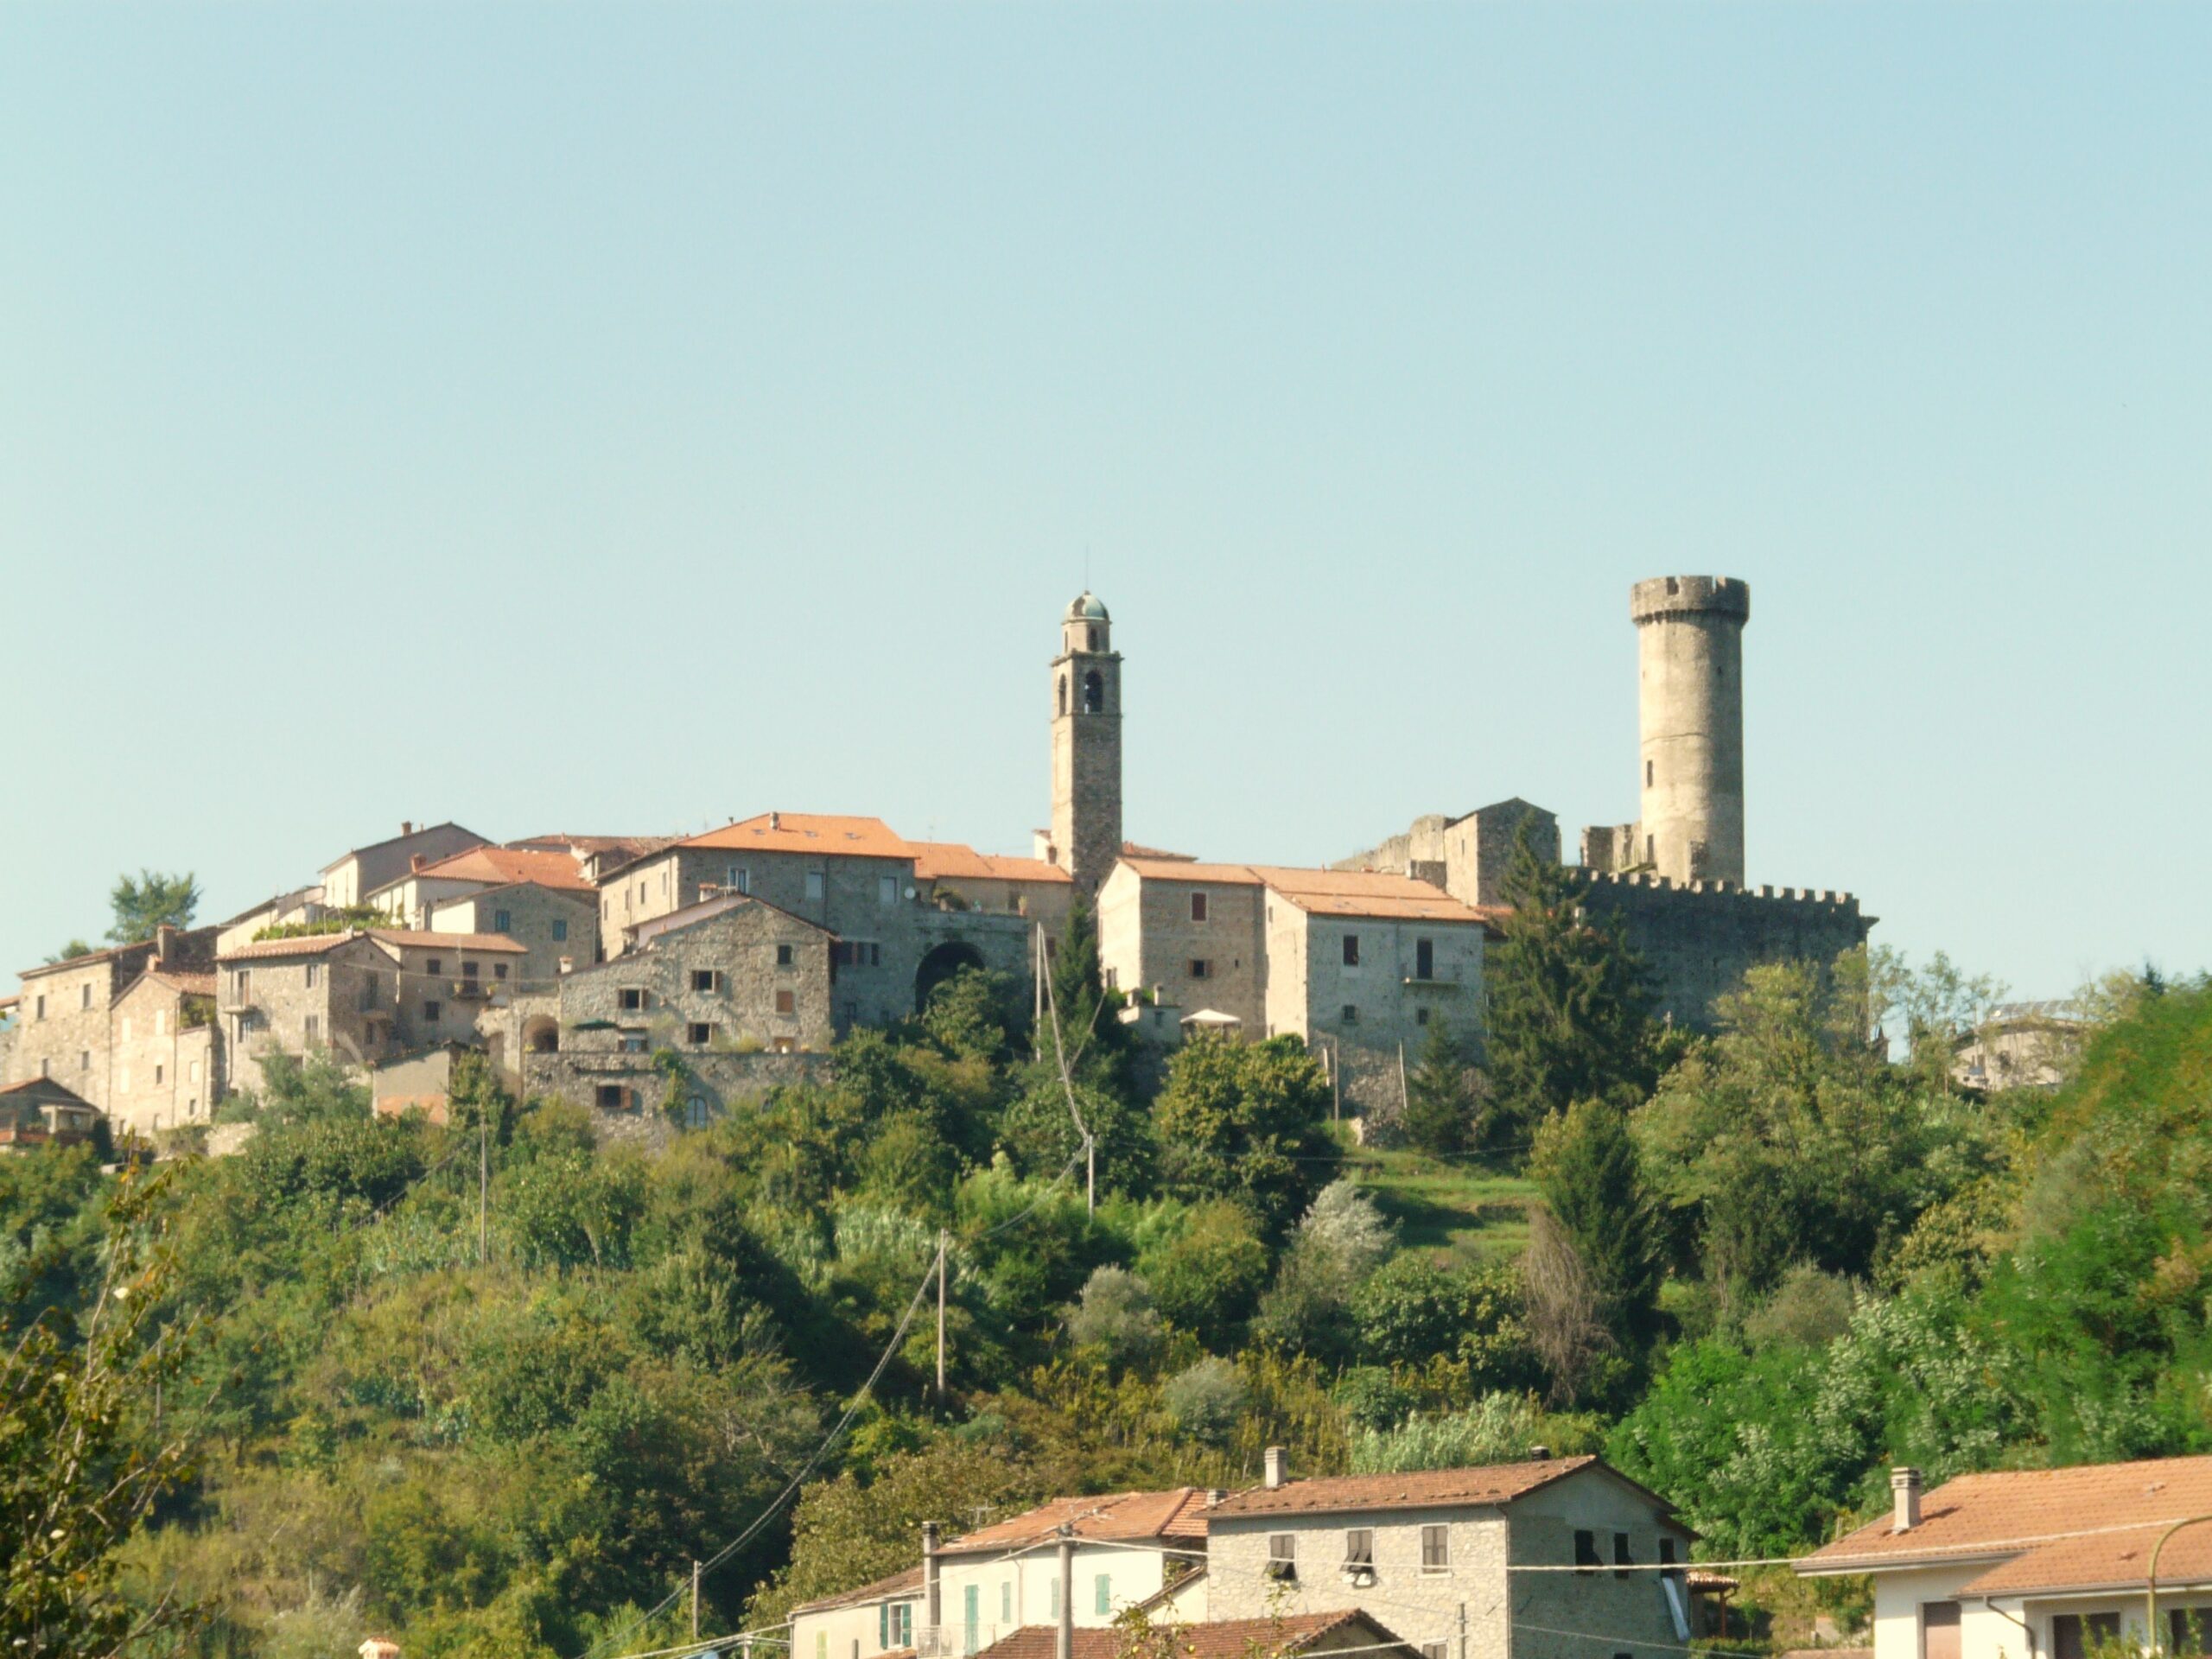 Villafranca in Lunigiana panorama